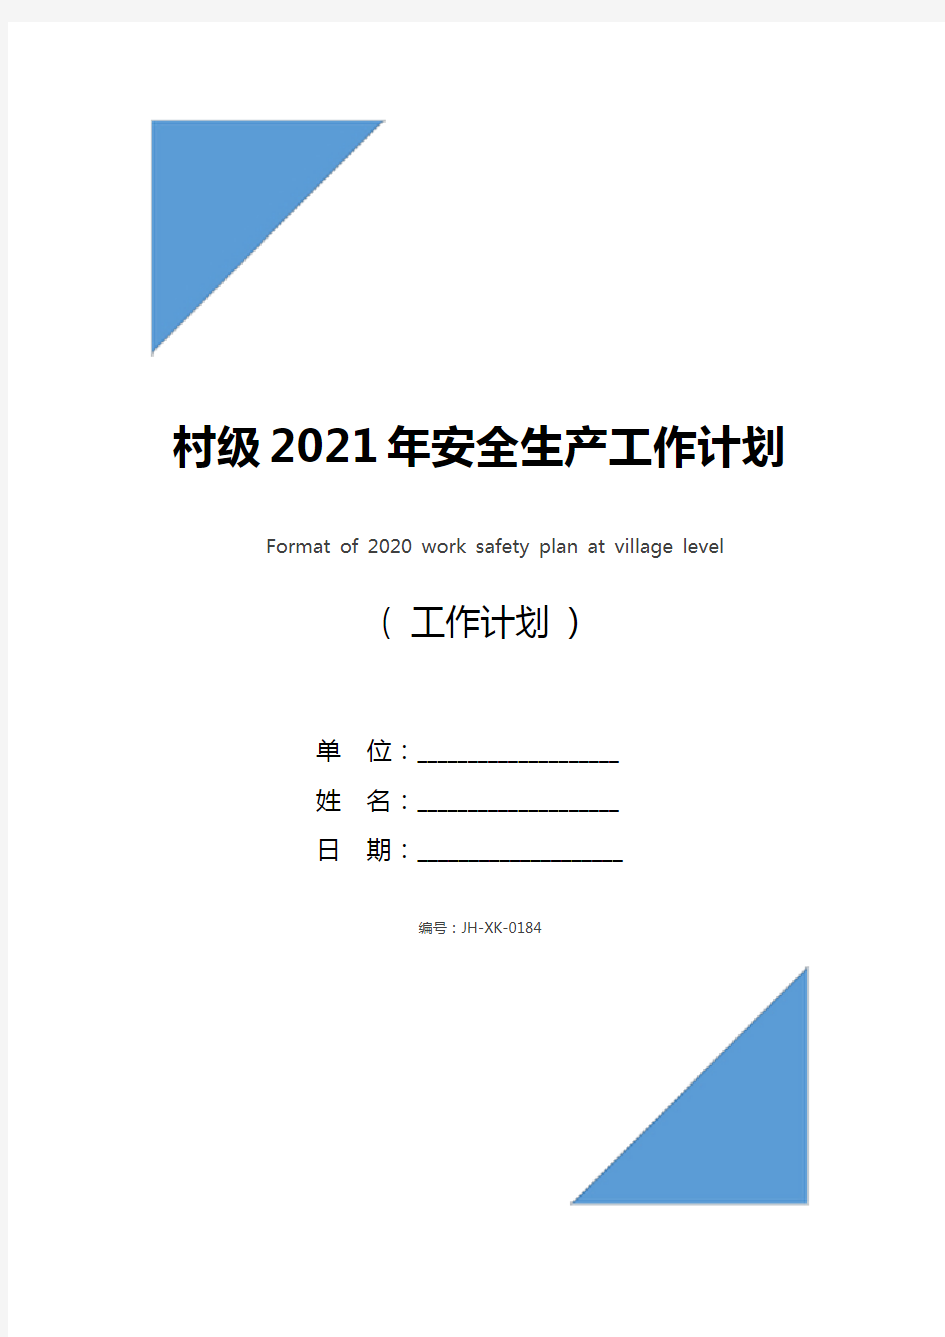 村级2021年安全生产工作计划格式(新版)